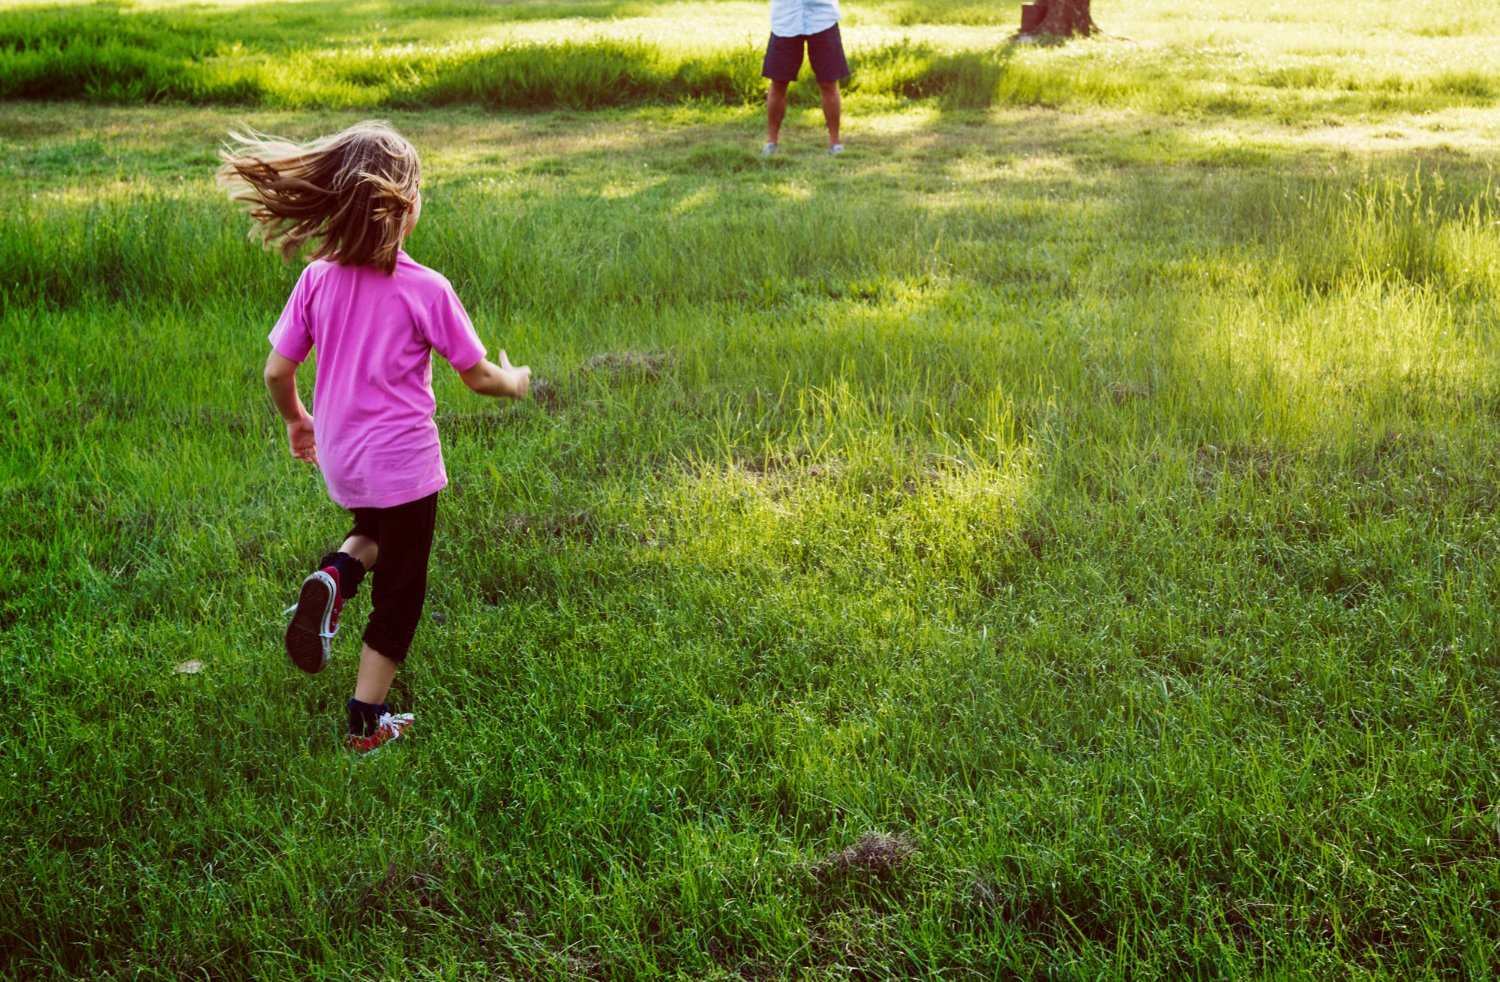 Беги девочка беги песня. Дети бегают. Девушка бежит. Две девочки бегущие по траве дляф фотошопа. Картинка девочка бегает.